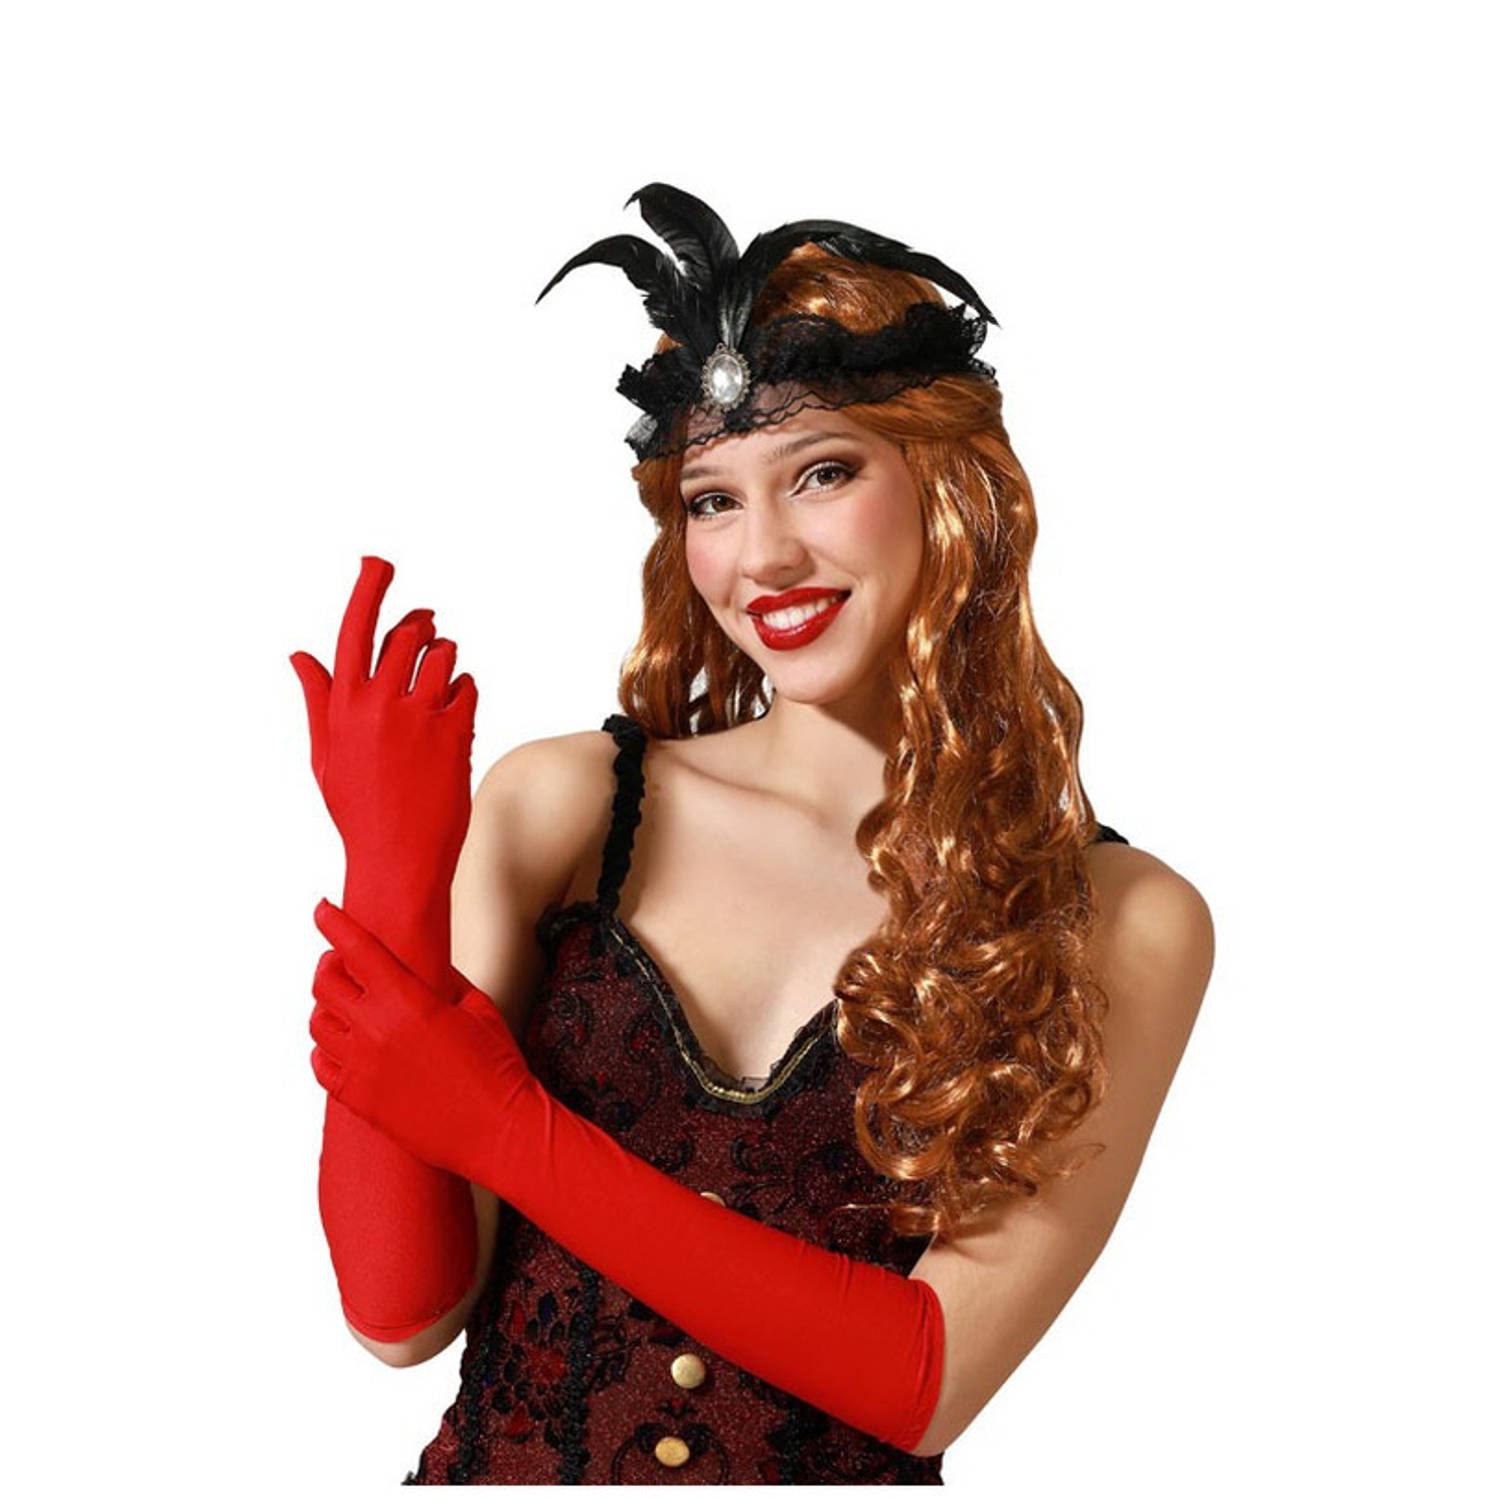 Verkleed party handschoenen voor dames - polyester - rood - one size - lang model